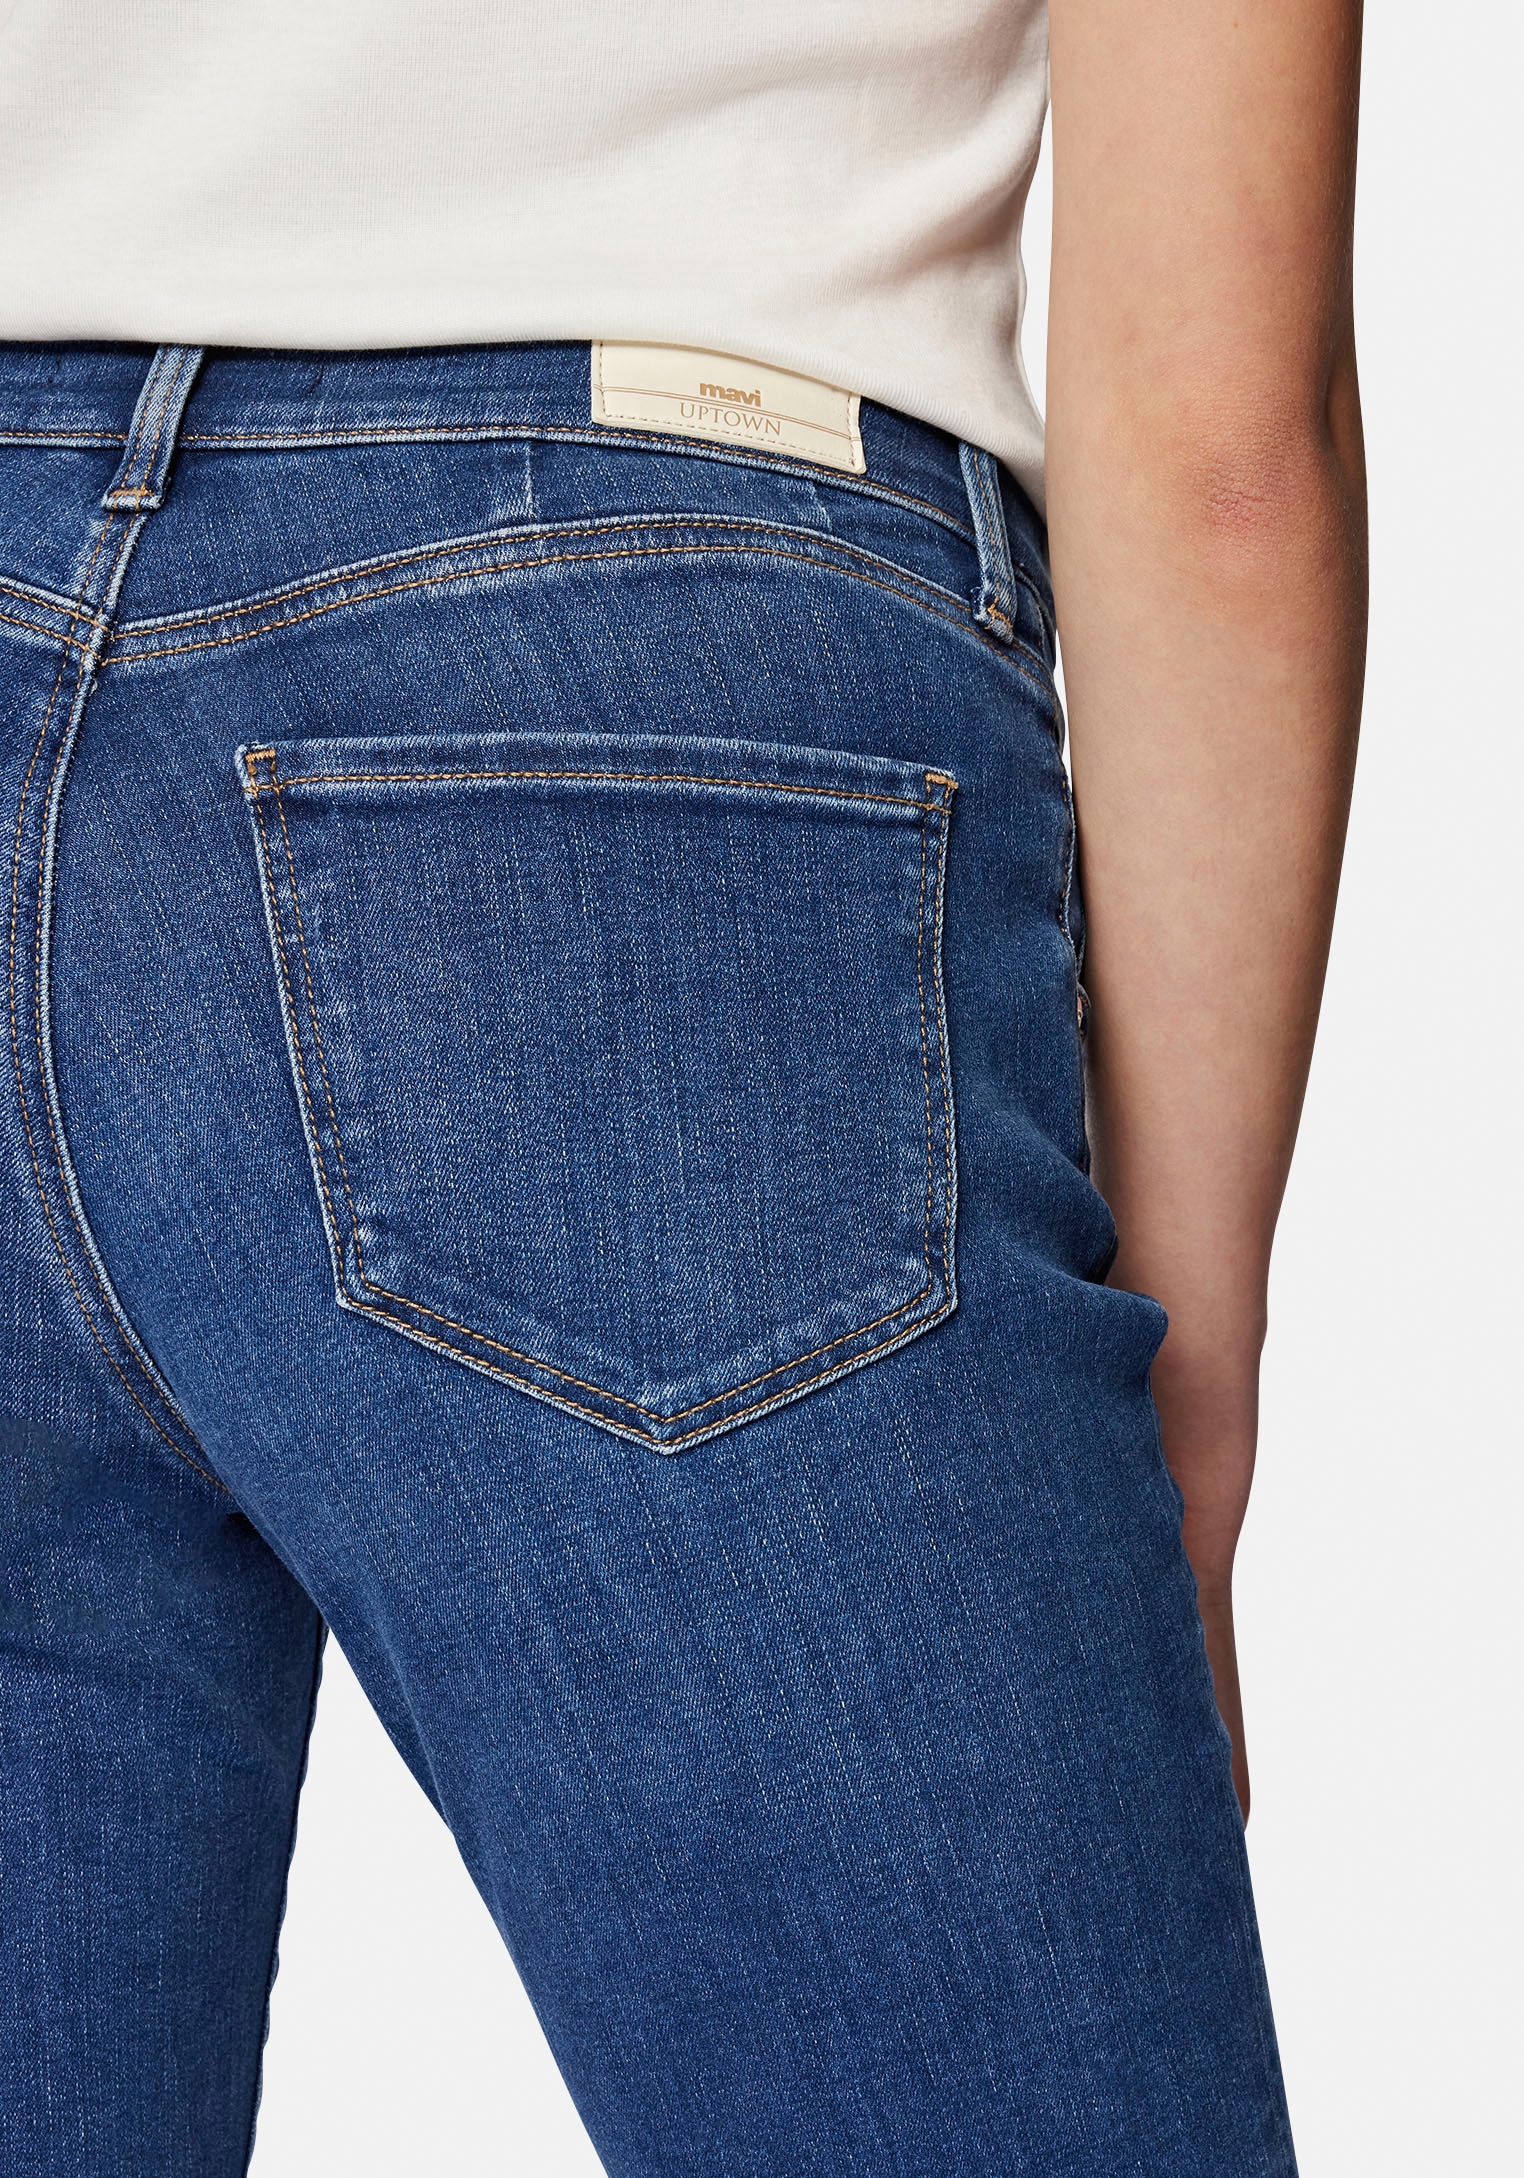 Mavi Slim-fit-Jeans, trageangenehmer Stretchdenim dank hochwertiger Verarbeitung